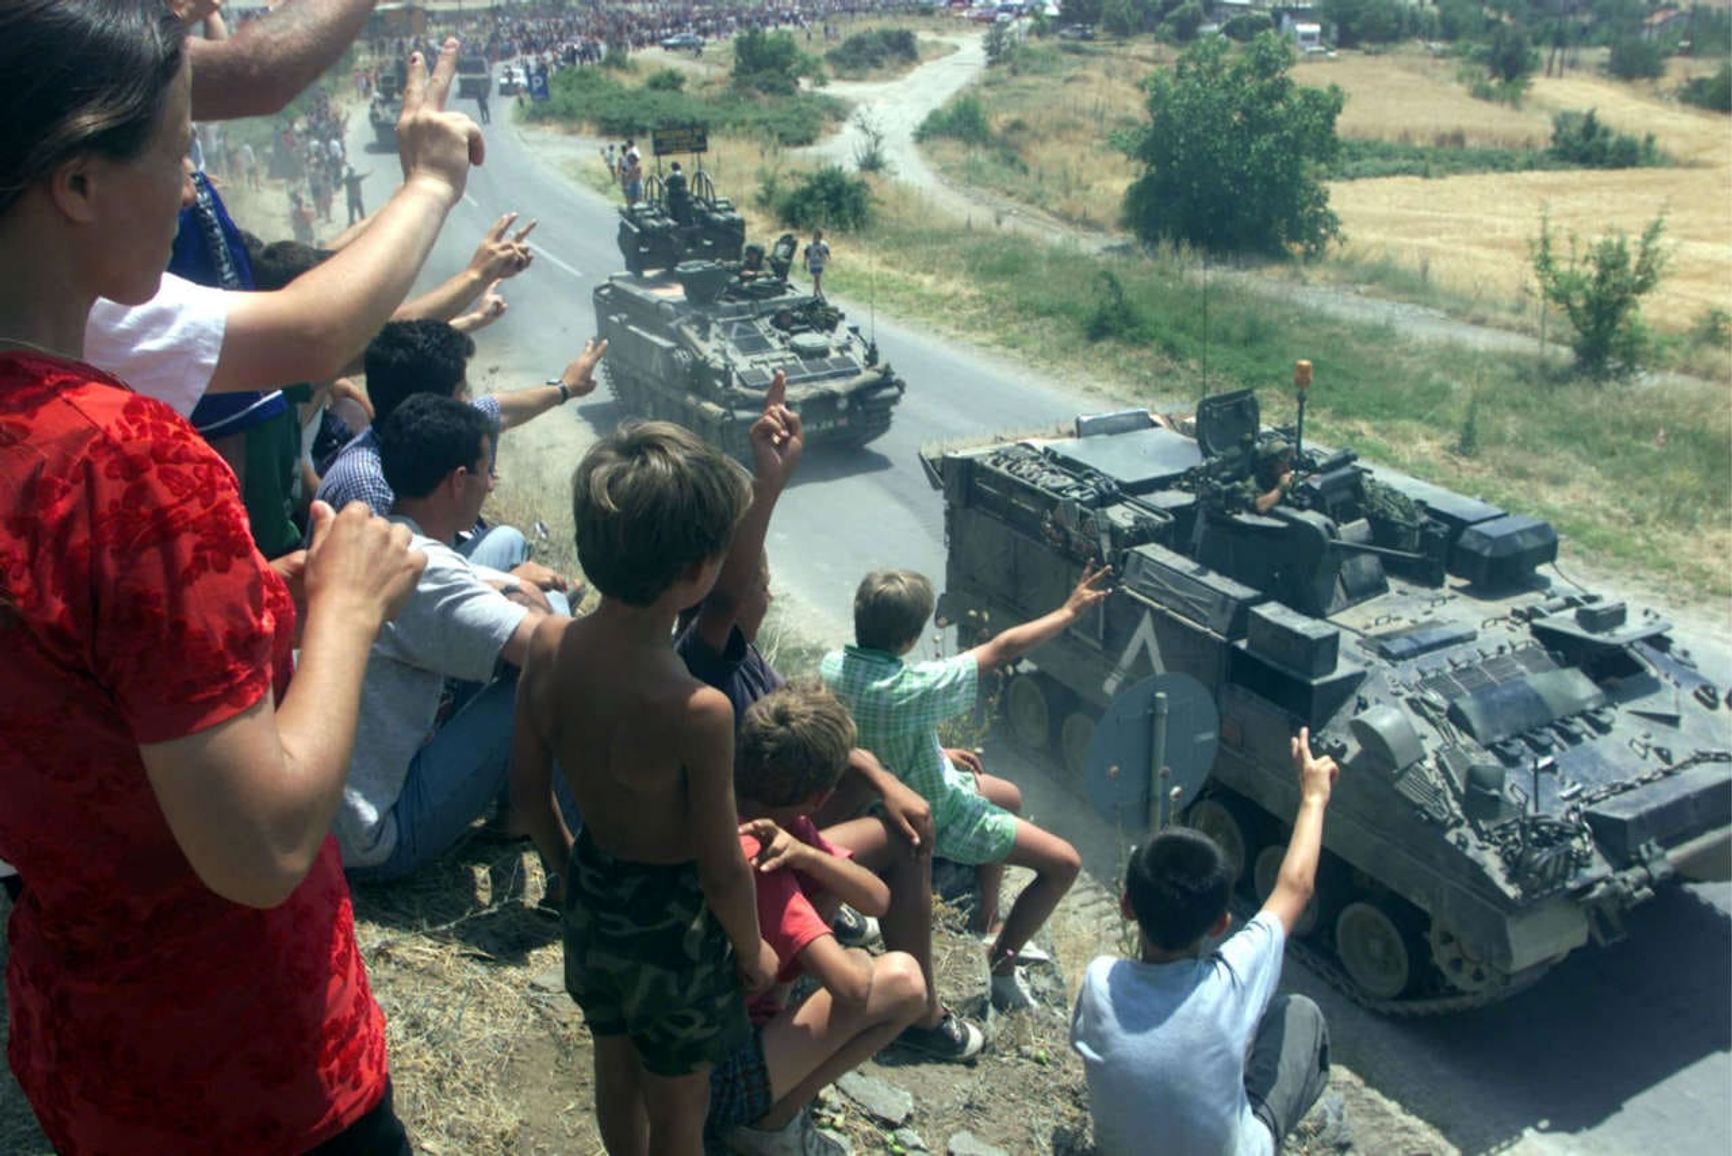 С 1999 года НАТО руководит операцией по поддержанию мира в Косово, в соответствии с мандатом резолюции 1244 Совета Безопасности ООН